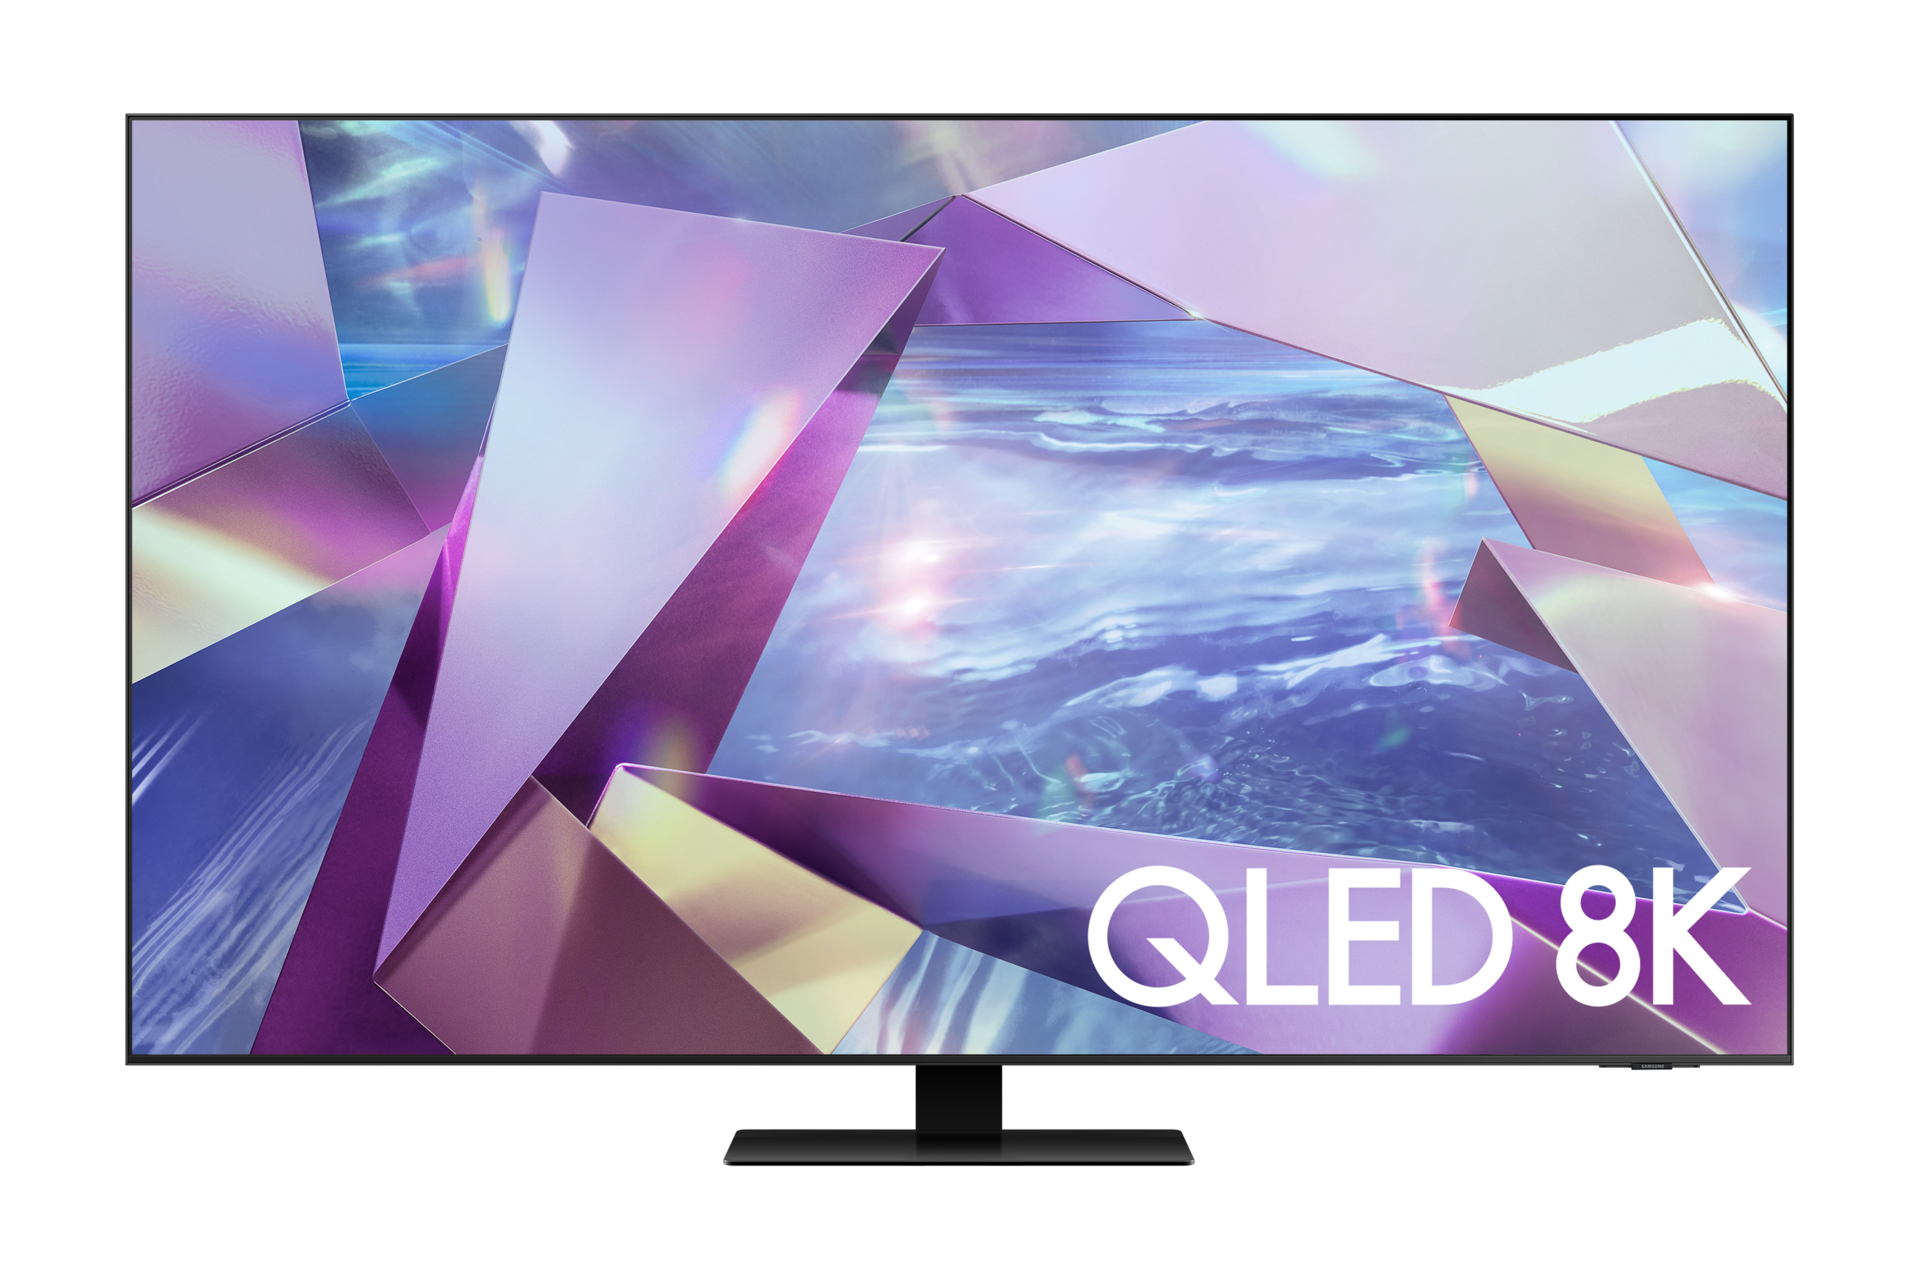 TV Samsung Qled 2020 : la nouvelle gamme de téléviseurs - Les Numériques